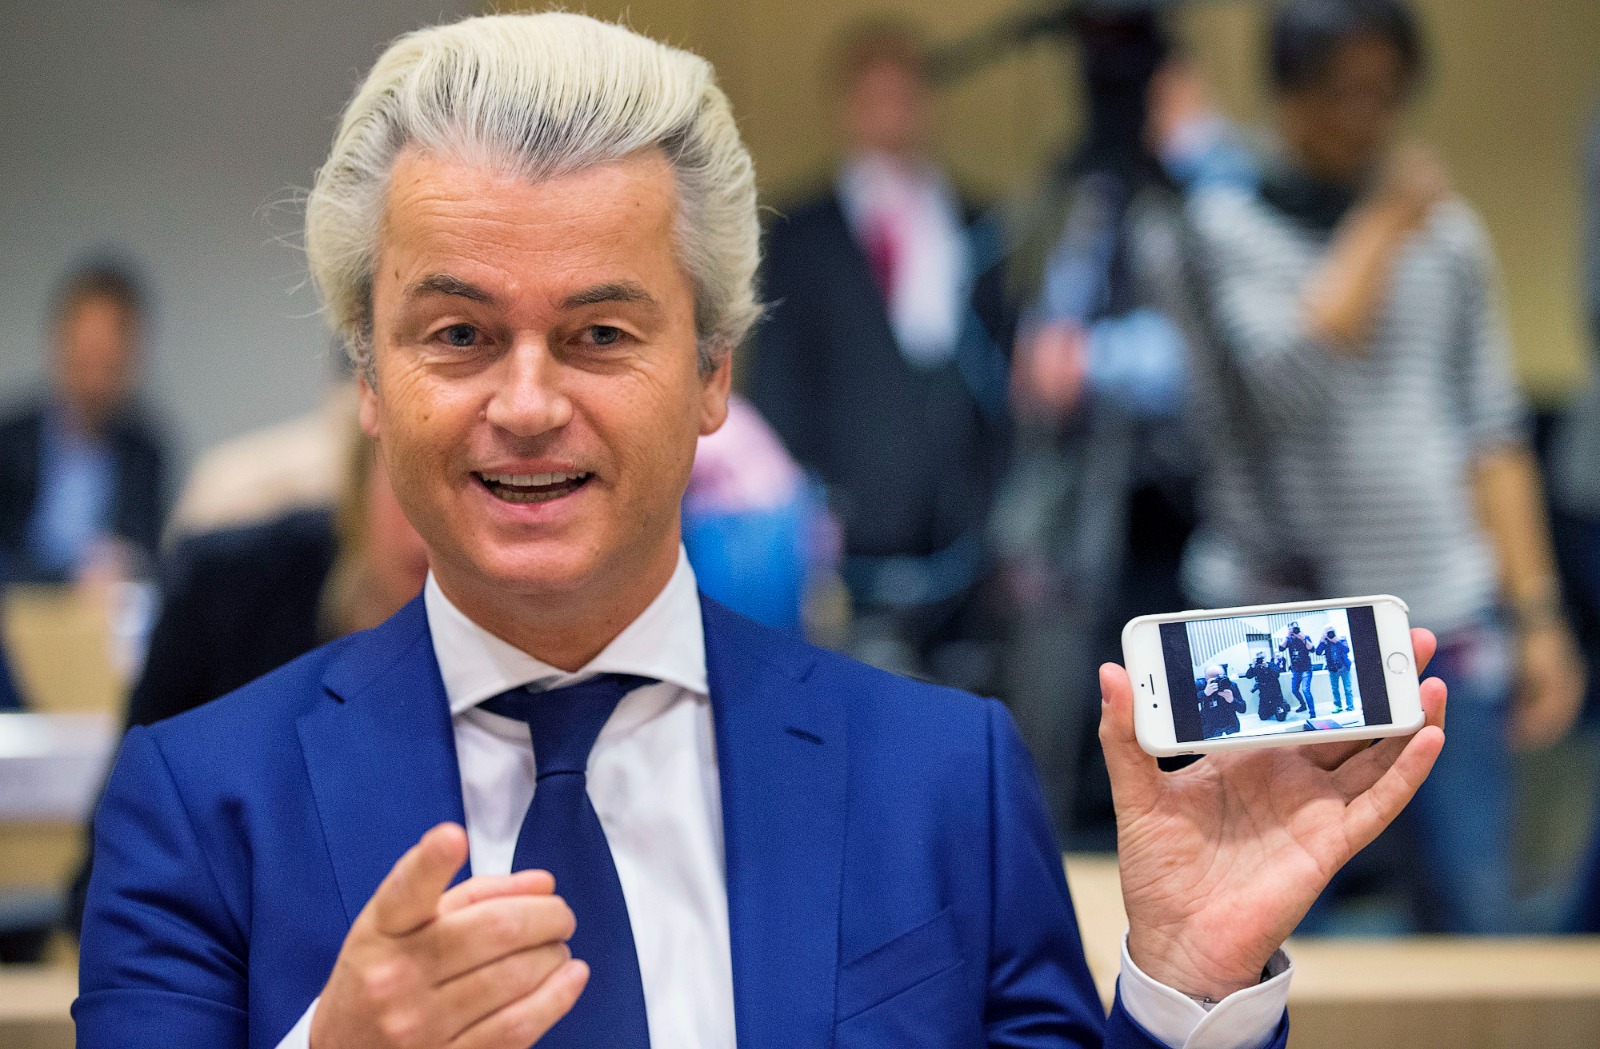 زعيم حزب الحرية الهولندي اليميني المتطرف خيرت فيلدرز يظهر صورة للمصورين الذين التقطهم بهاتفه الخلوي قبل محاكمته في قاعة المحكمة في شيفول بهولندا، 18 مارس 2016-